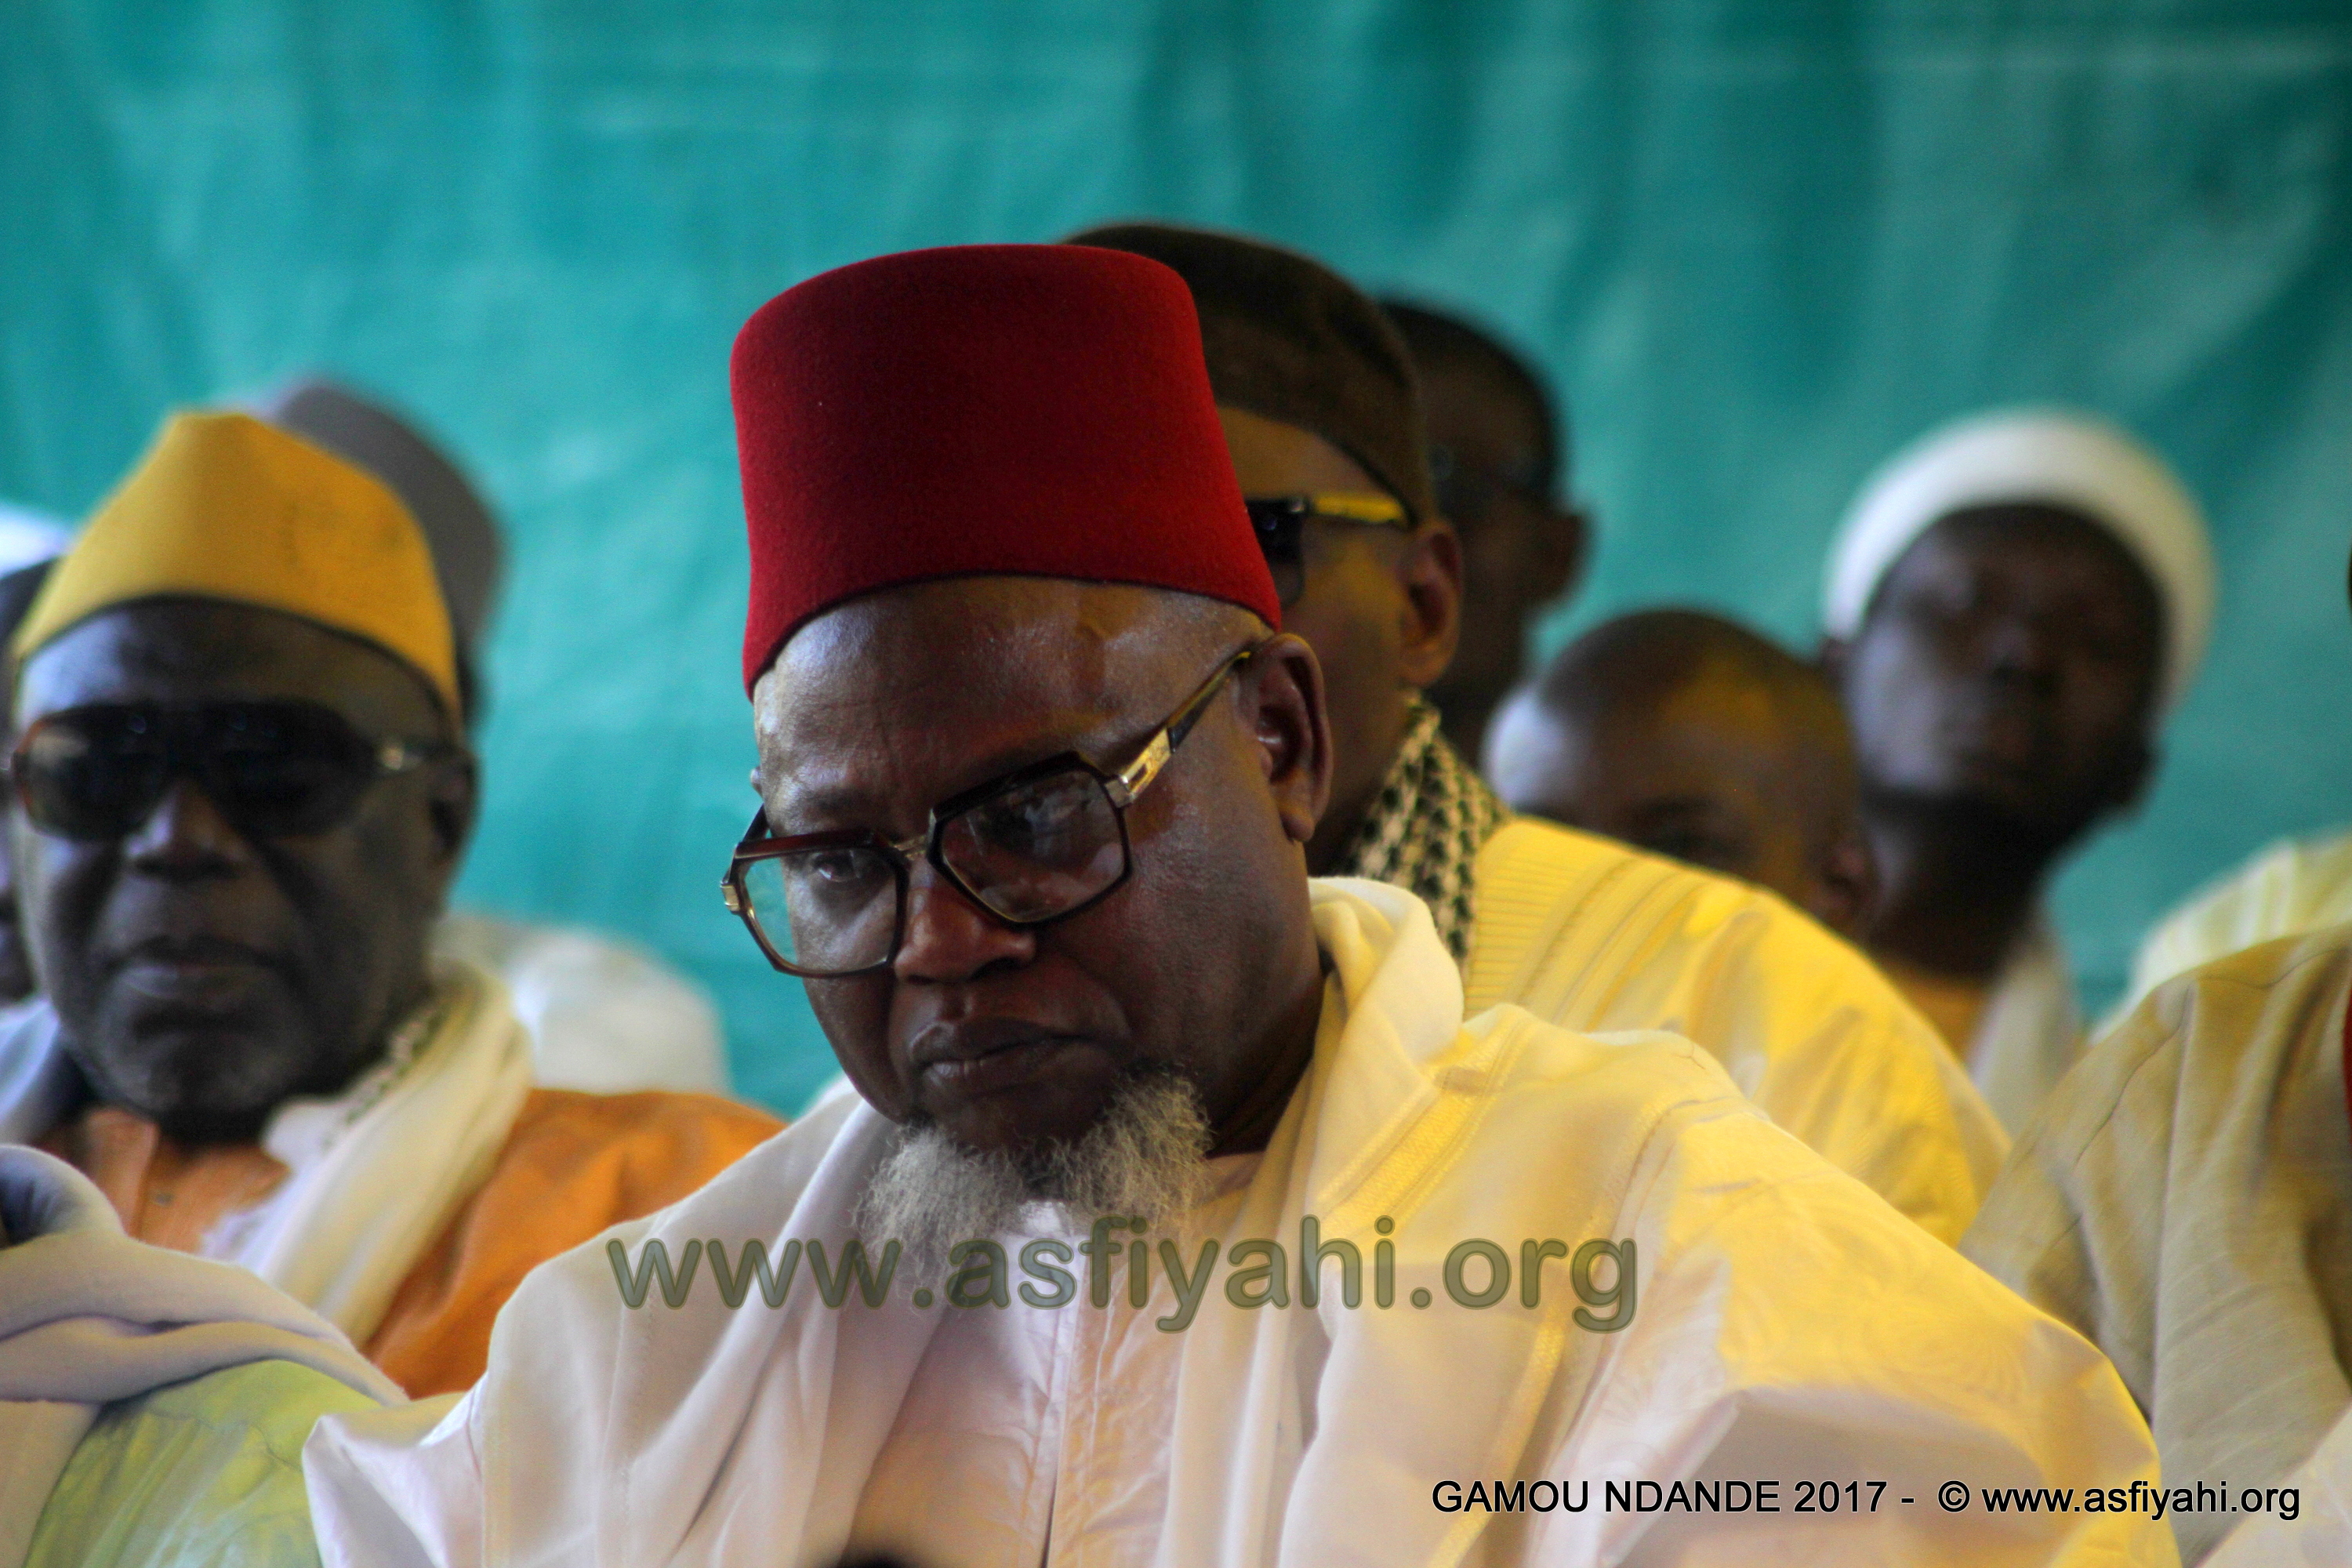 PHOTOS - NDANDE - Les Images du Gamou de Ndande 2017, organisé par l'association pour la renaissance de Ndande